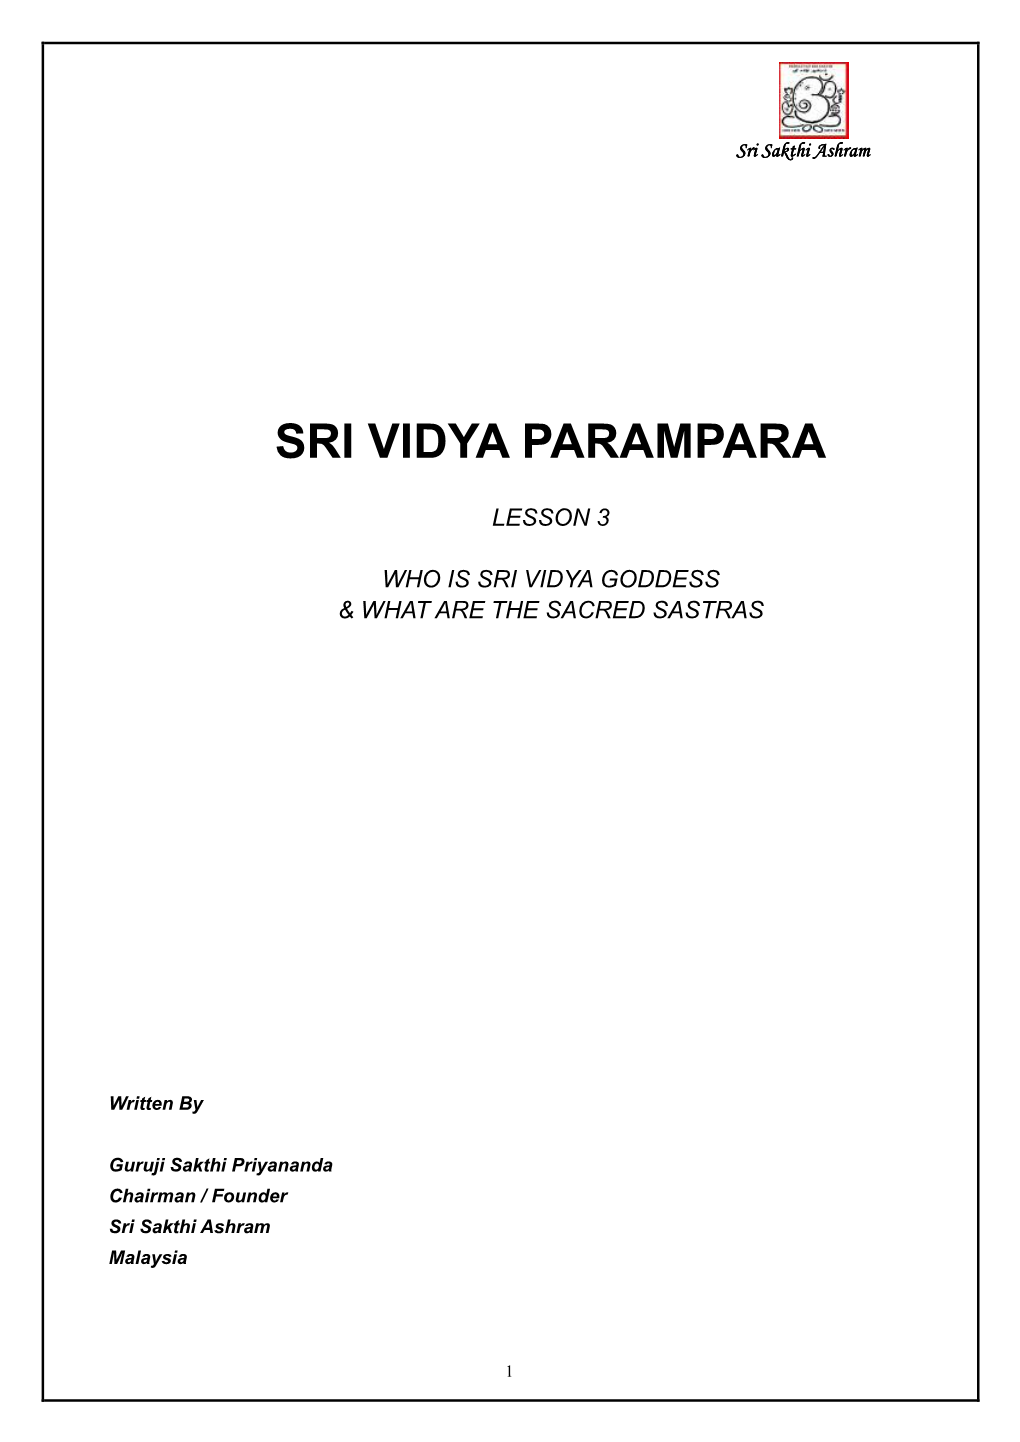 Sri Vidya Parampara